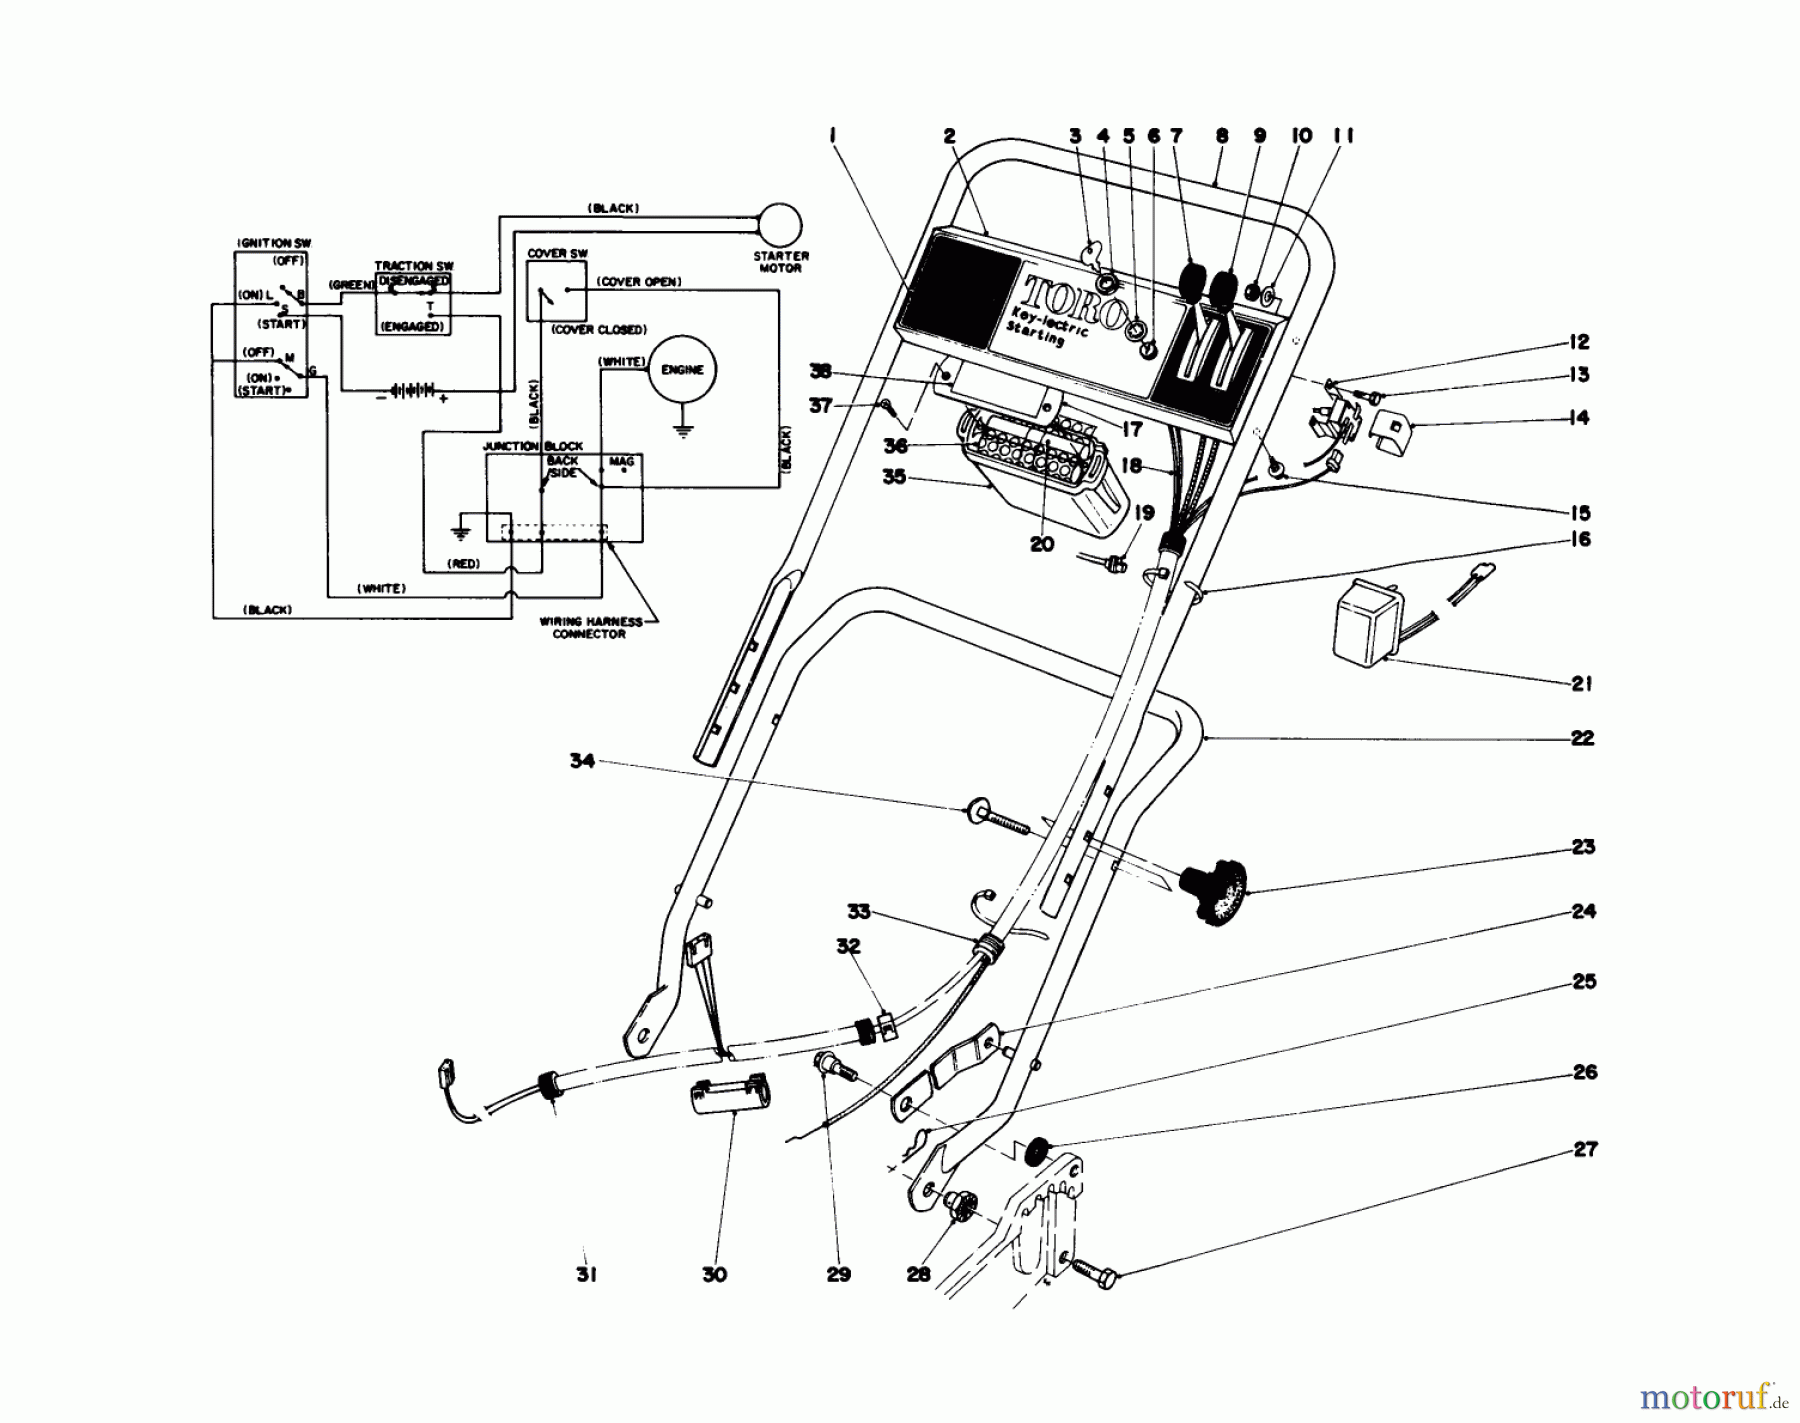  Toro Neu Mowers, Walk-Behind Seite 1 20690 - Toro Lawnmower, 1978 (8000001-8999999) HANDLE ASSEMBLY